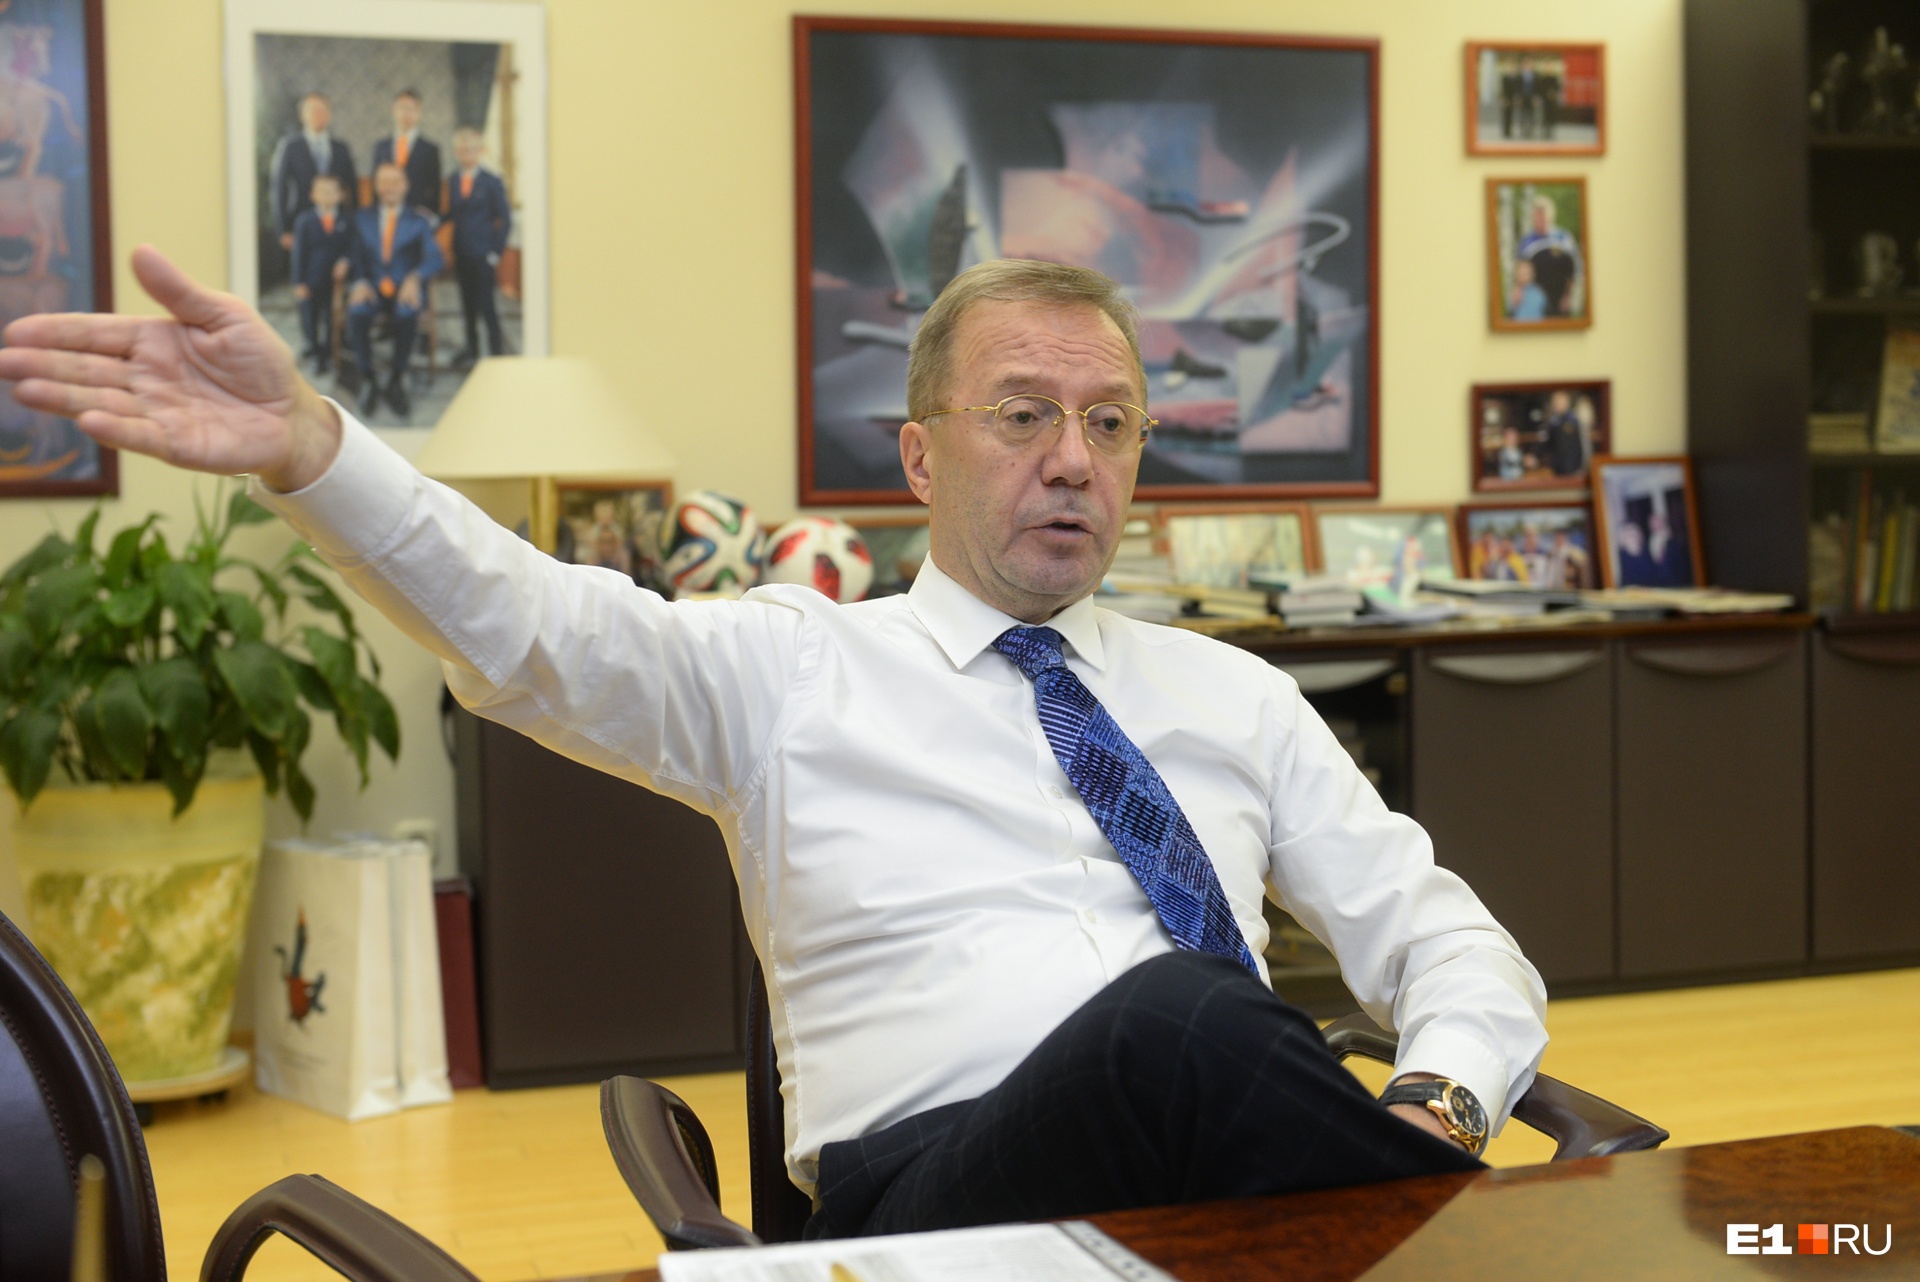 Владелец «Кировского» Игорь Ковпак: «Без поддержки от властей мы получили экономический удар»